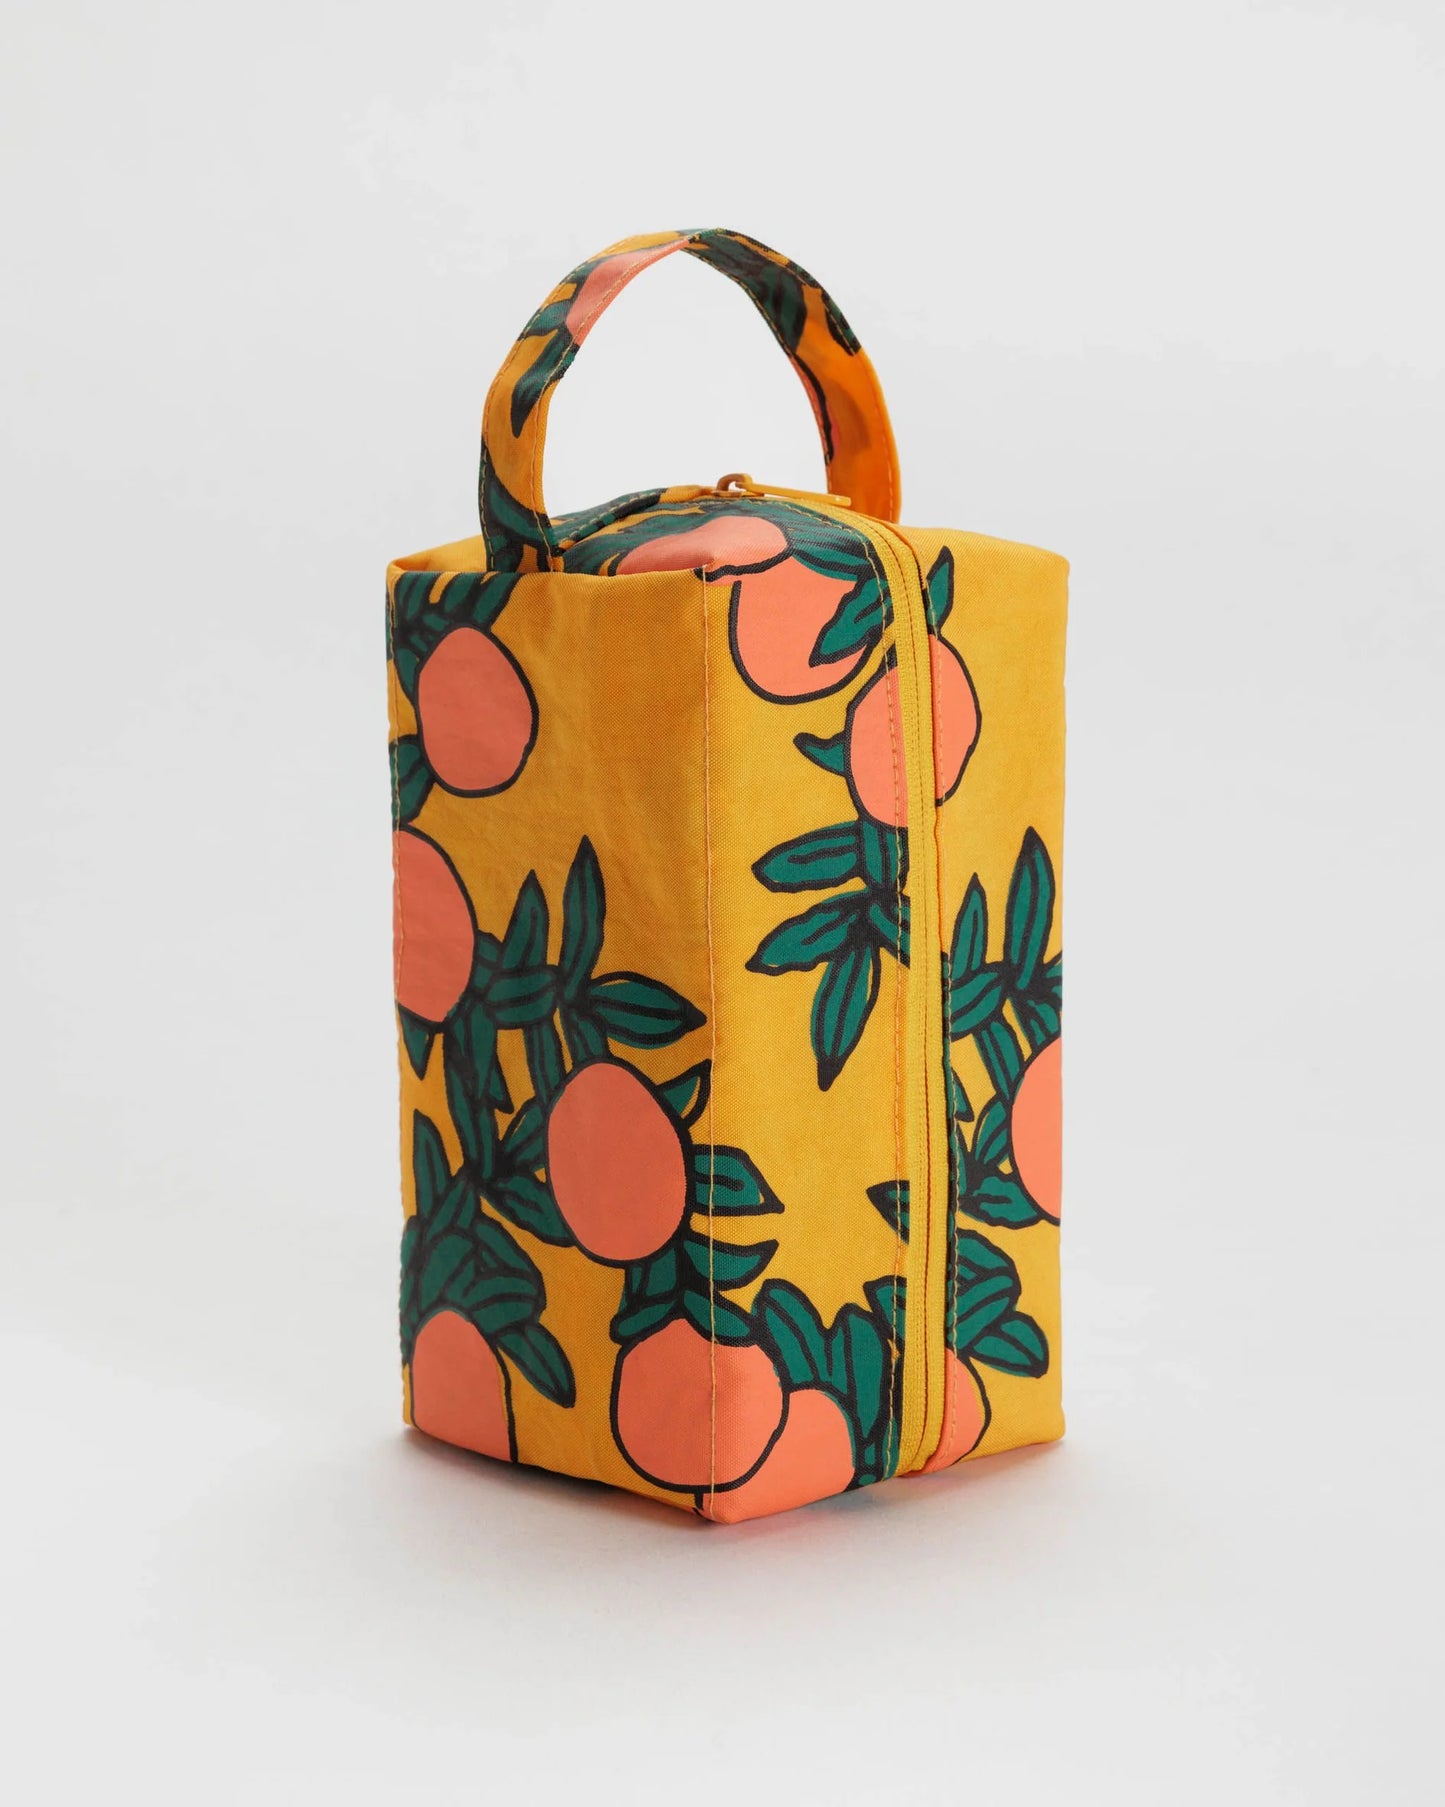 BAGGU Dopp kit bag in orange tree